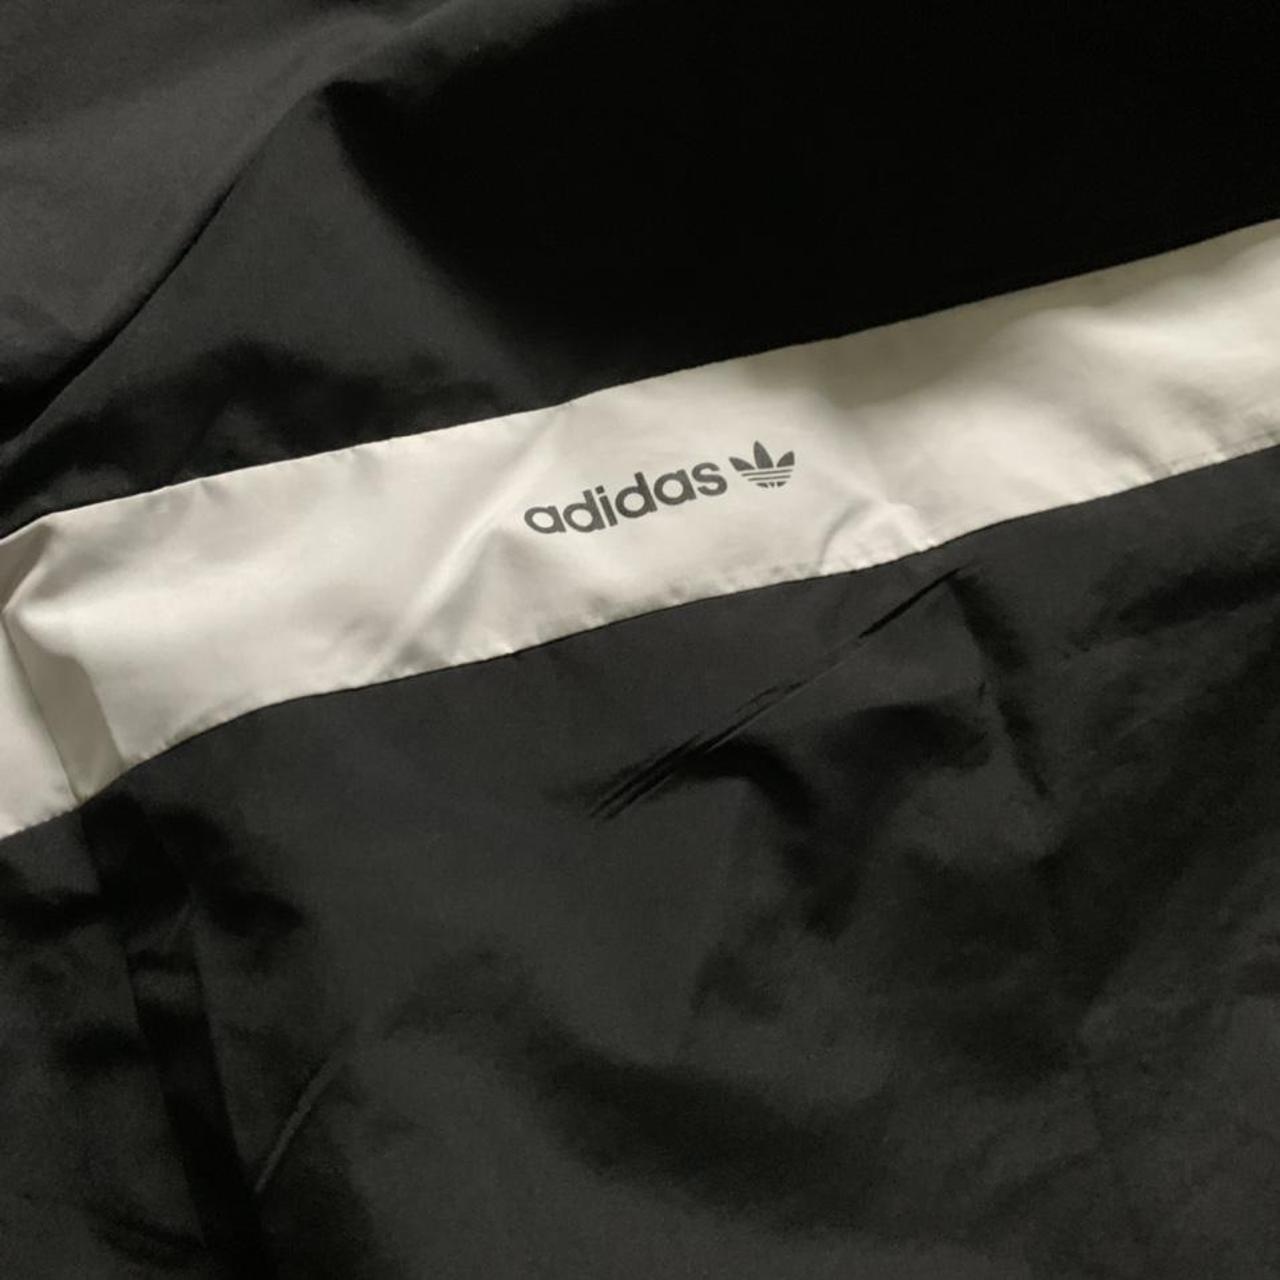 Product Image 4 - Adidas spring jacket
Light jacket, worn